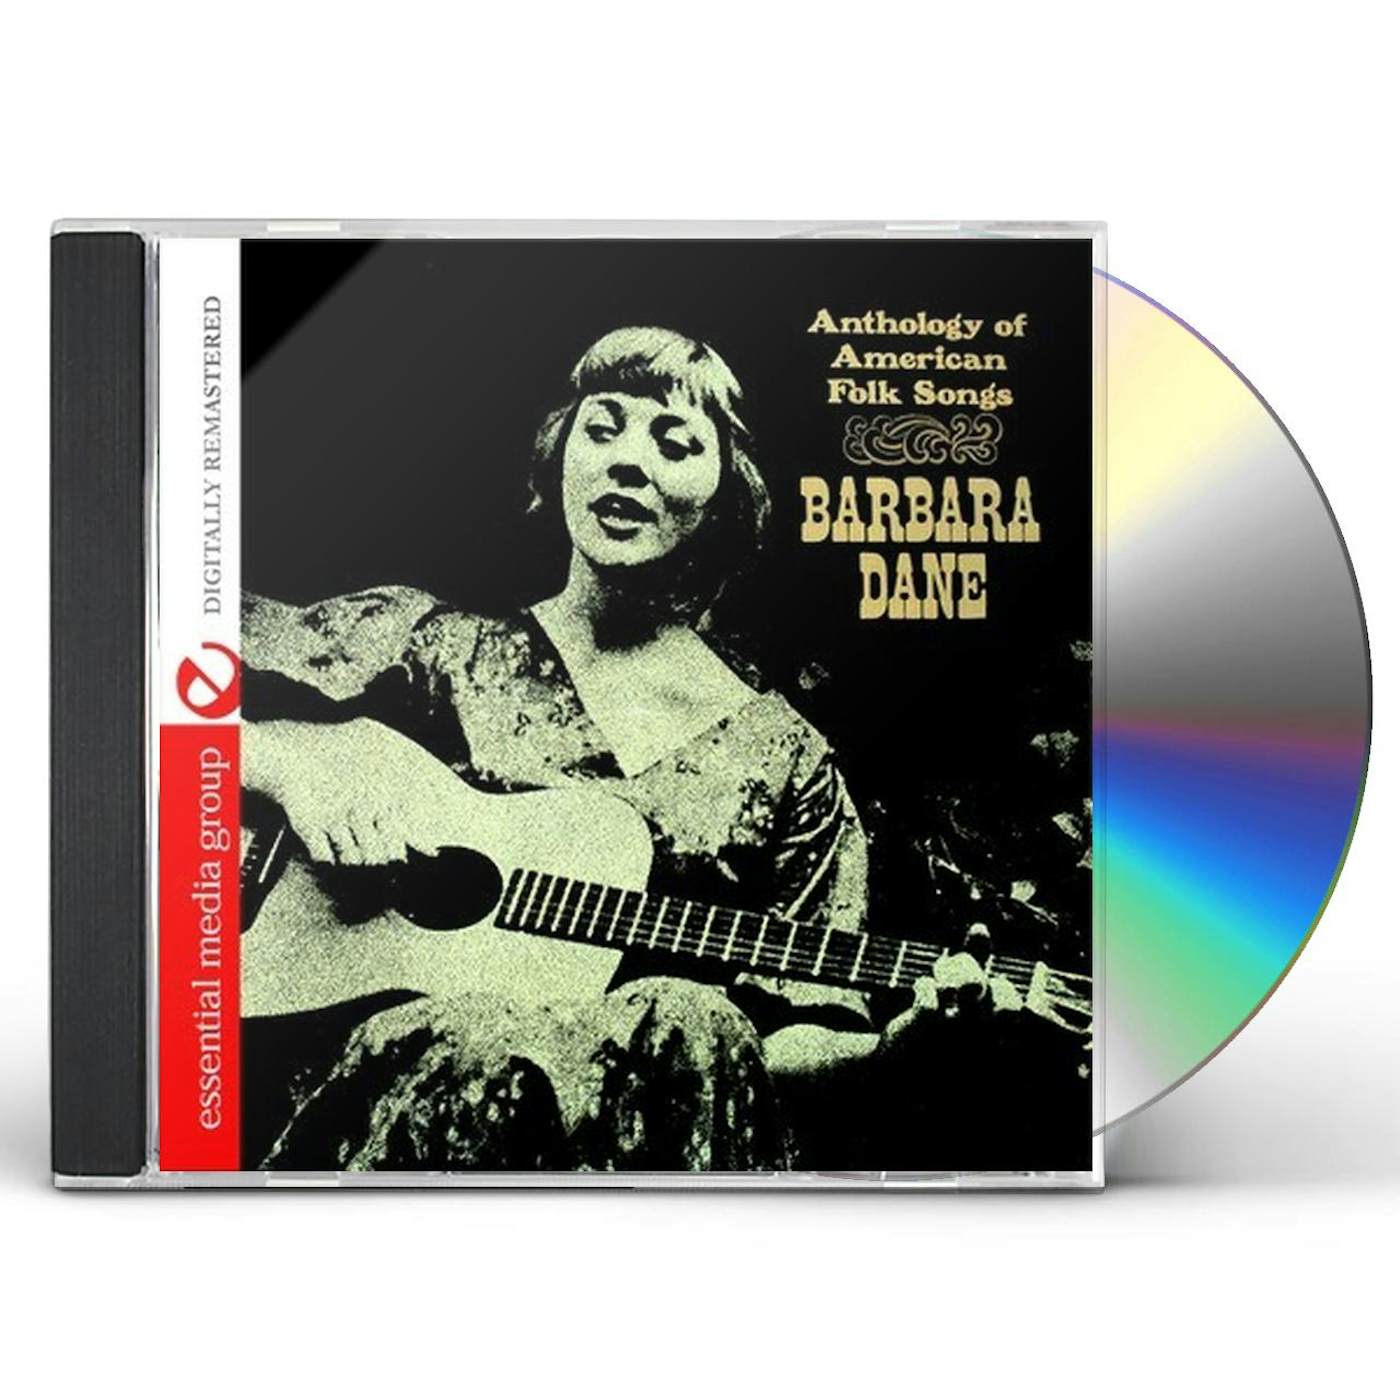 Barbara Dane ANTHOLOGY OF AMERICAN FOLK SONGS CD